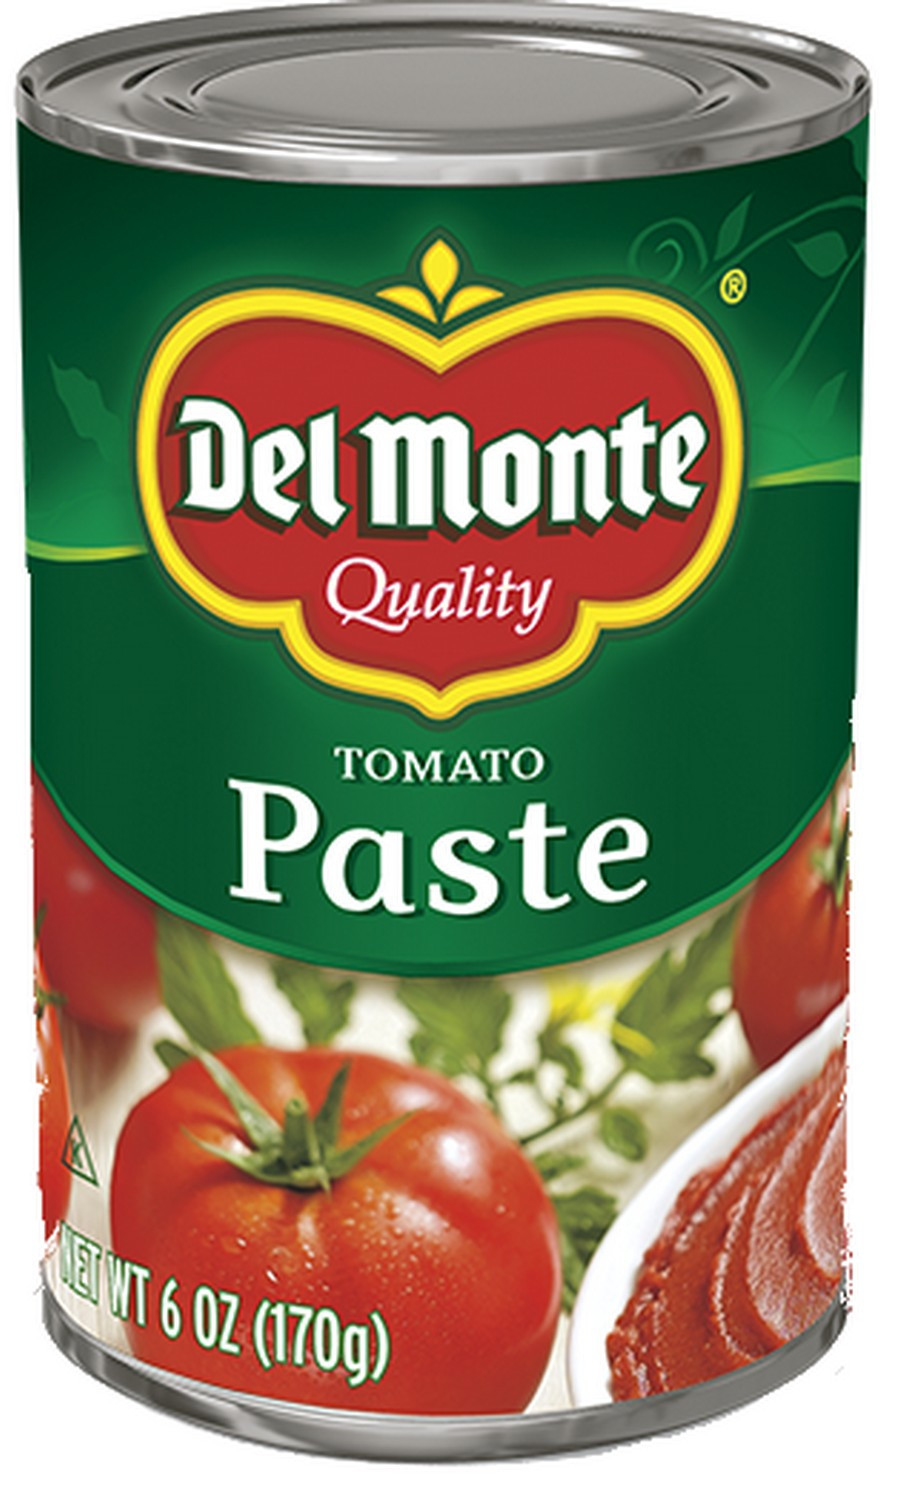 Tomato Sauce From Paste
 tomato paste ingre nts